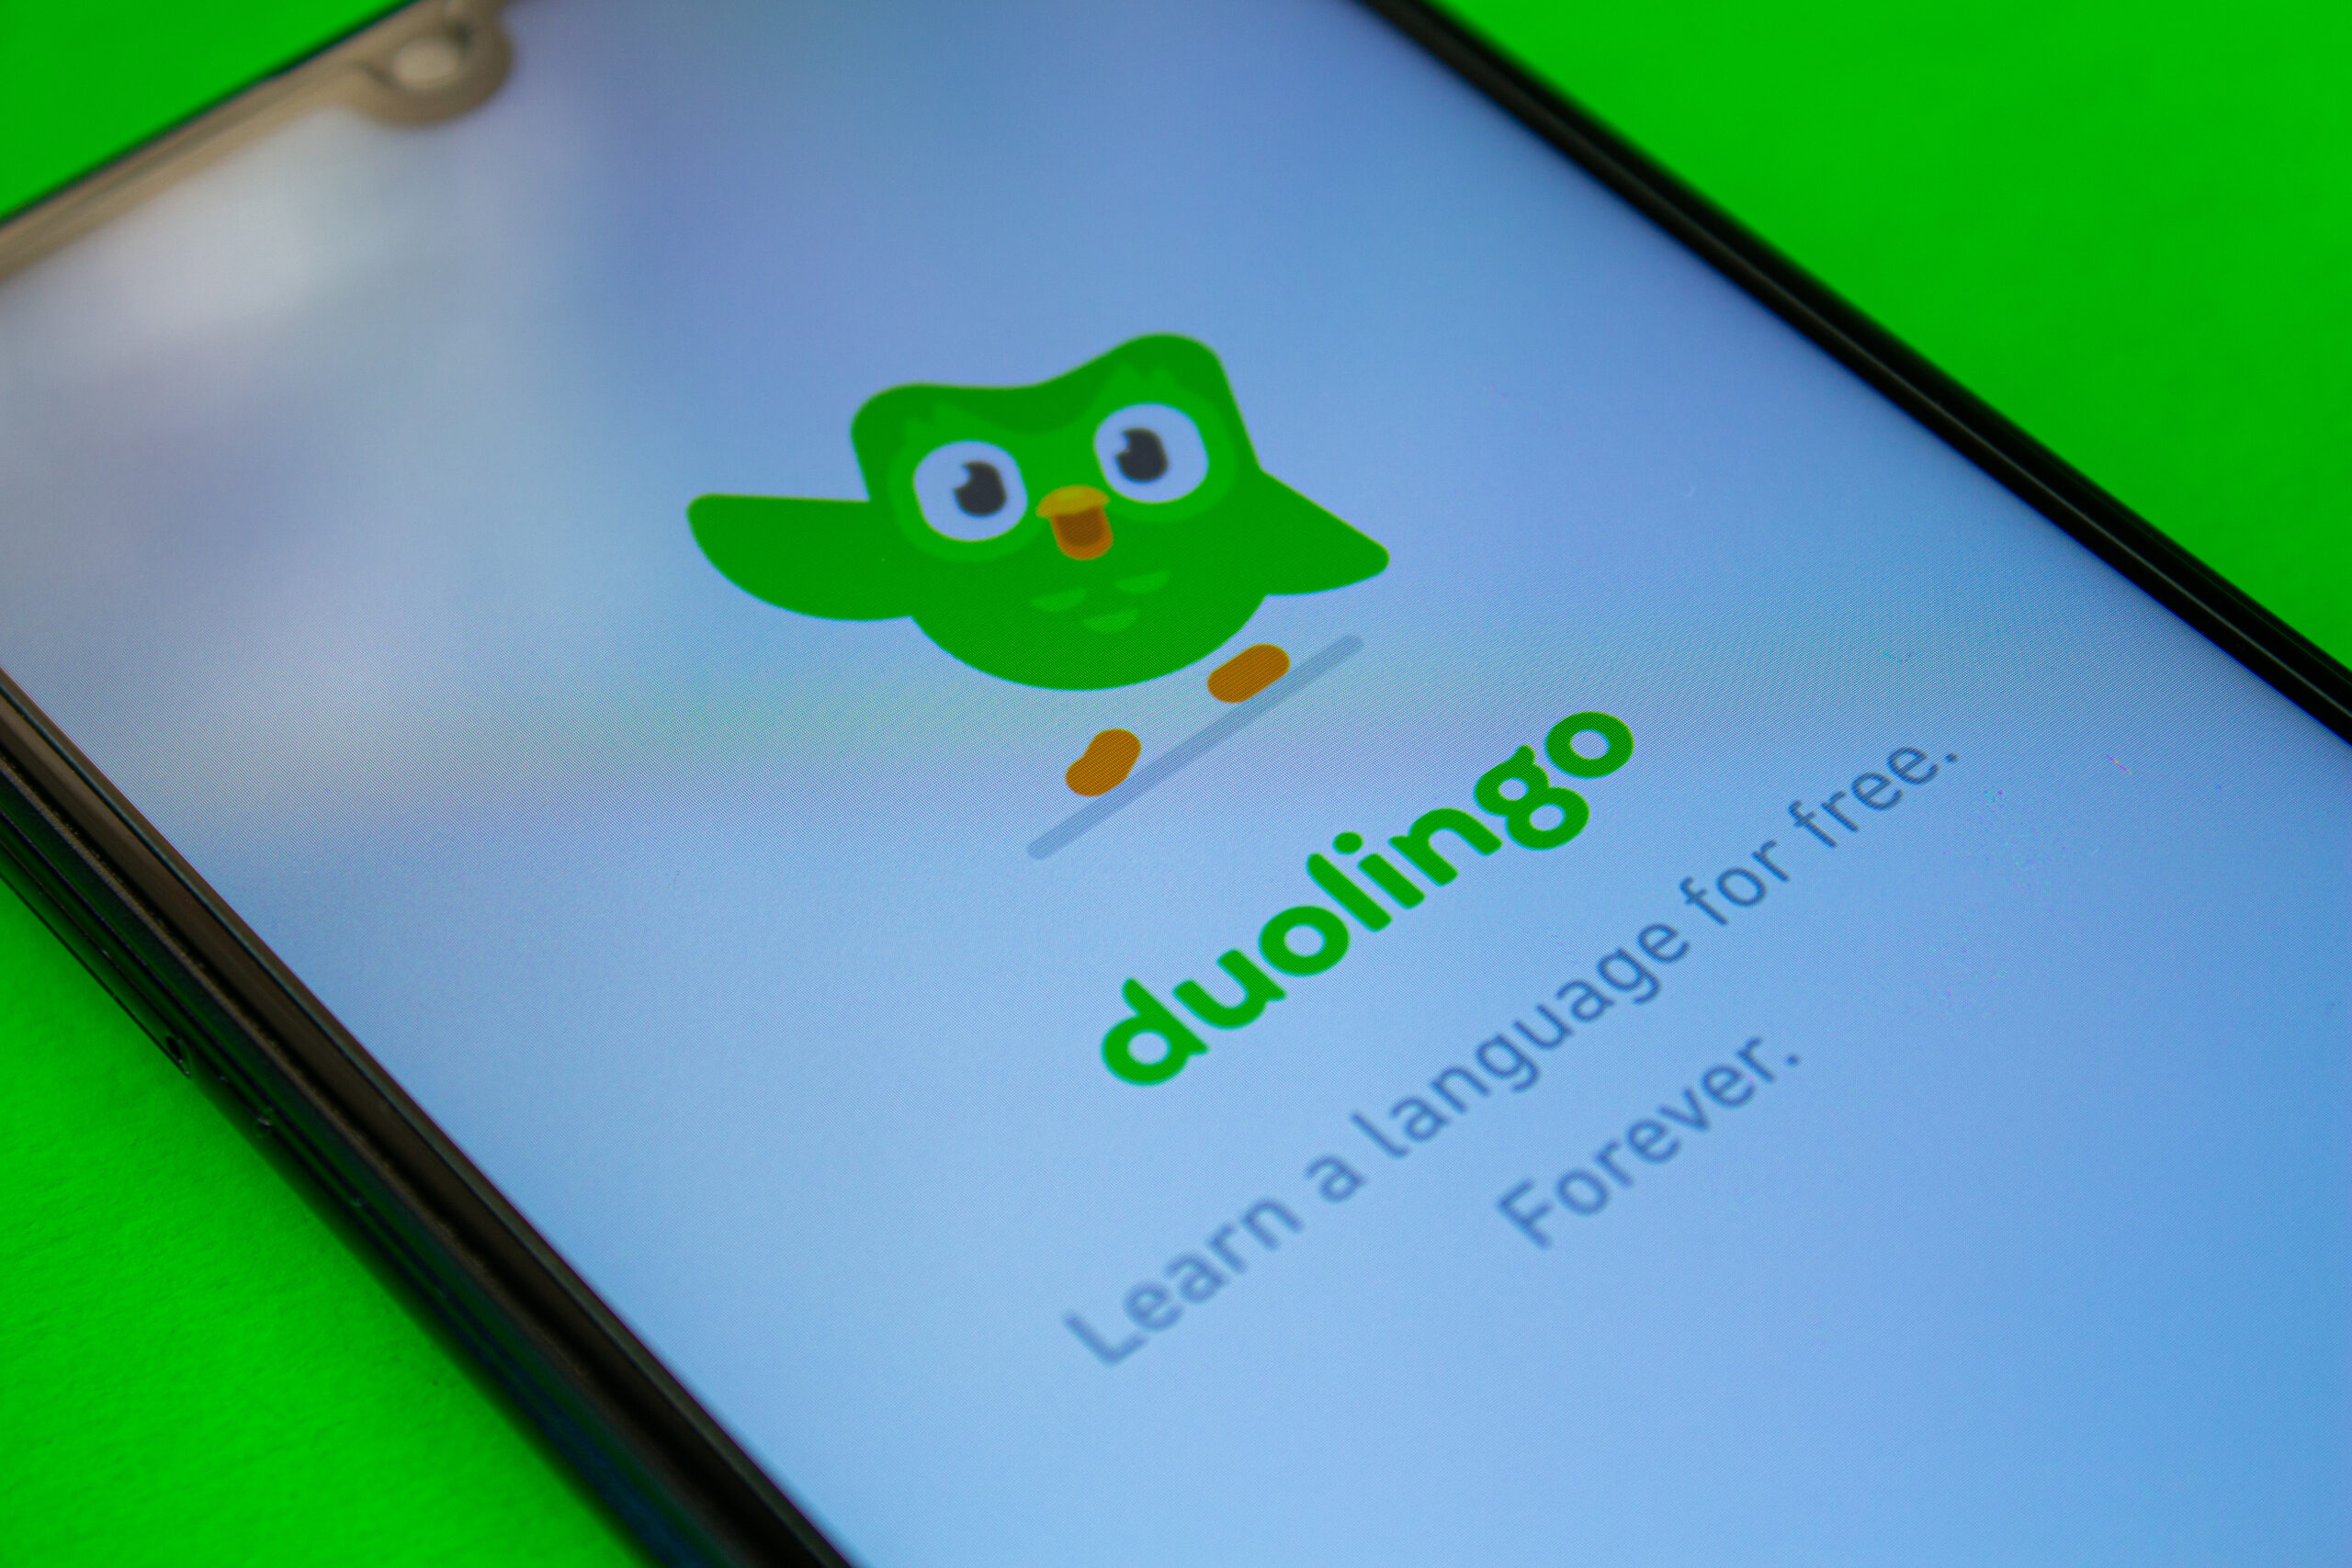 Idiomas mais estudados no Duolingo em 2023